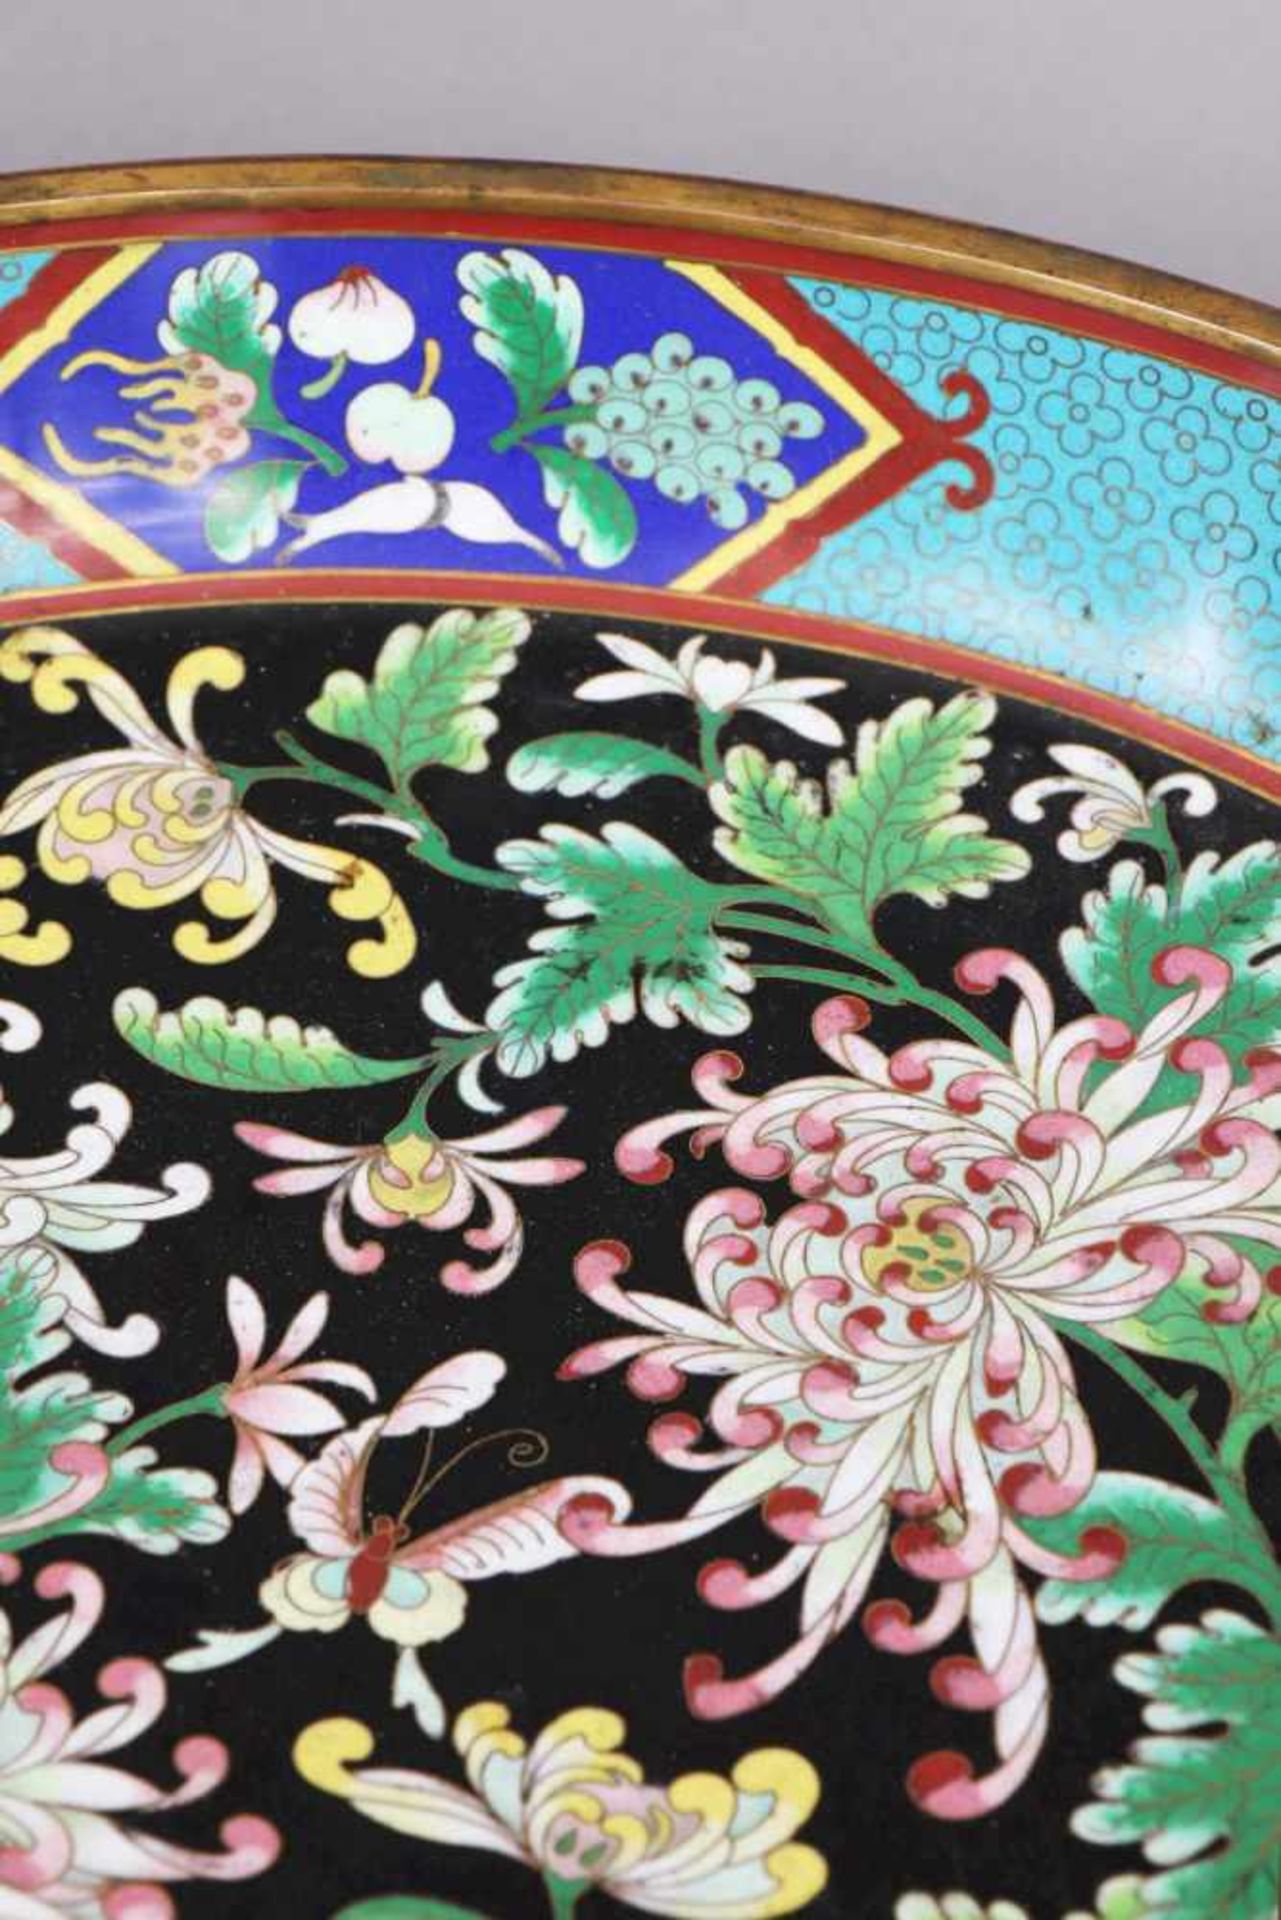 Große Cloisonée Schale der Qing Dynastie (1644-1912) Päonien- und Schmetterlingsdekor in - Bild 2 aus 3